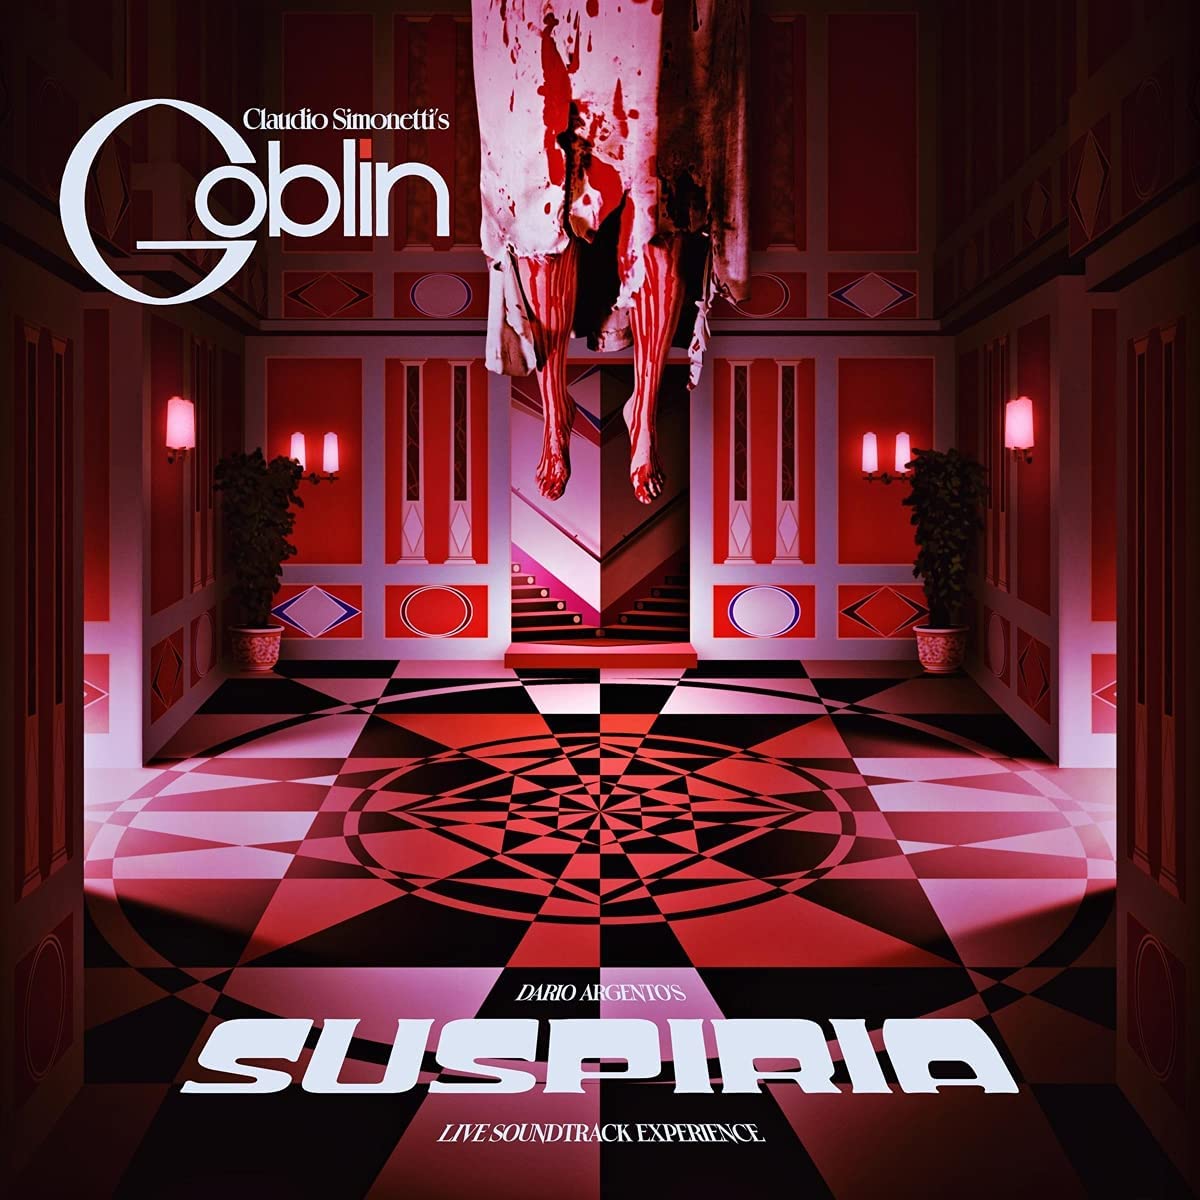 Claudio Simonetti's Goblin - Suspiria Live Soundtrack Experience